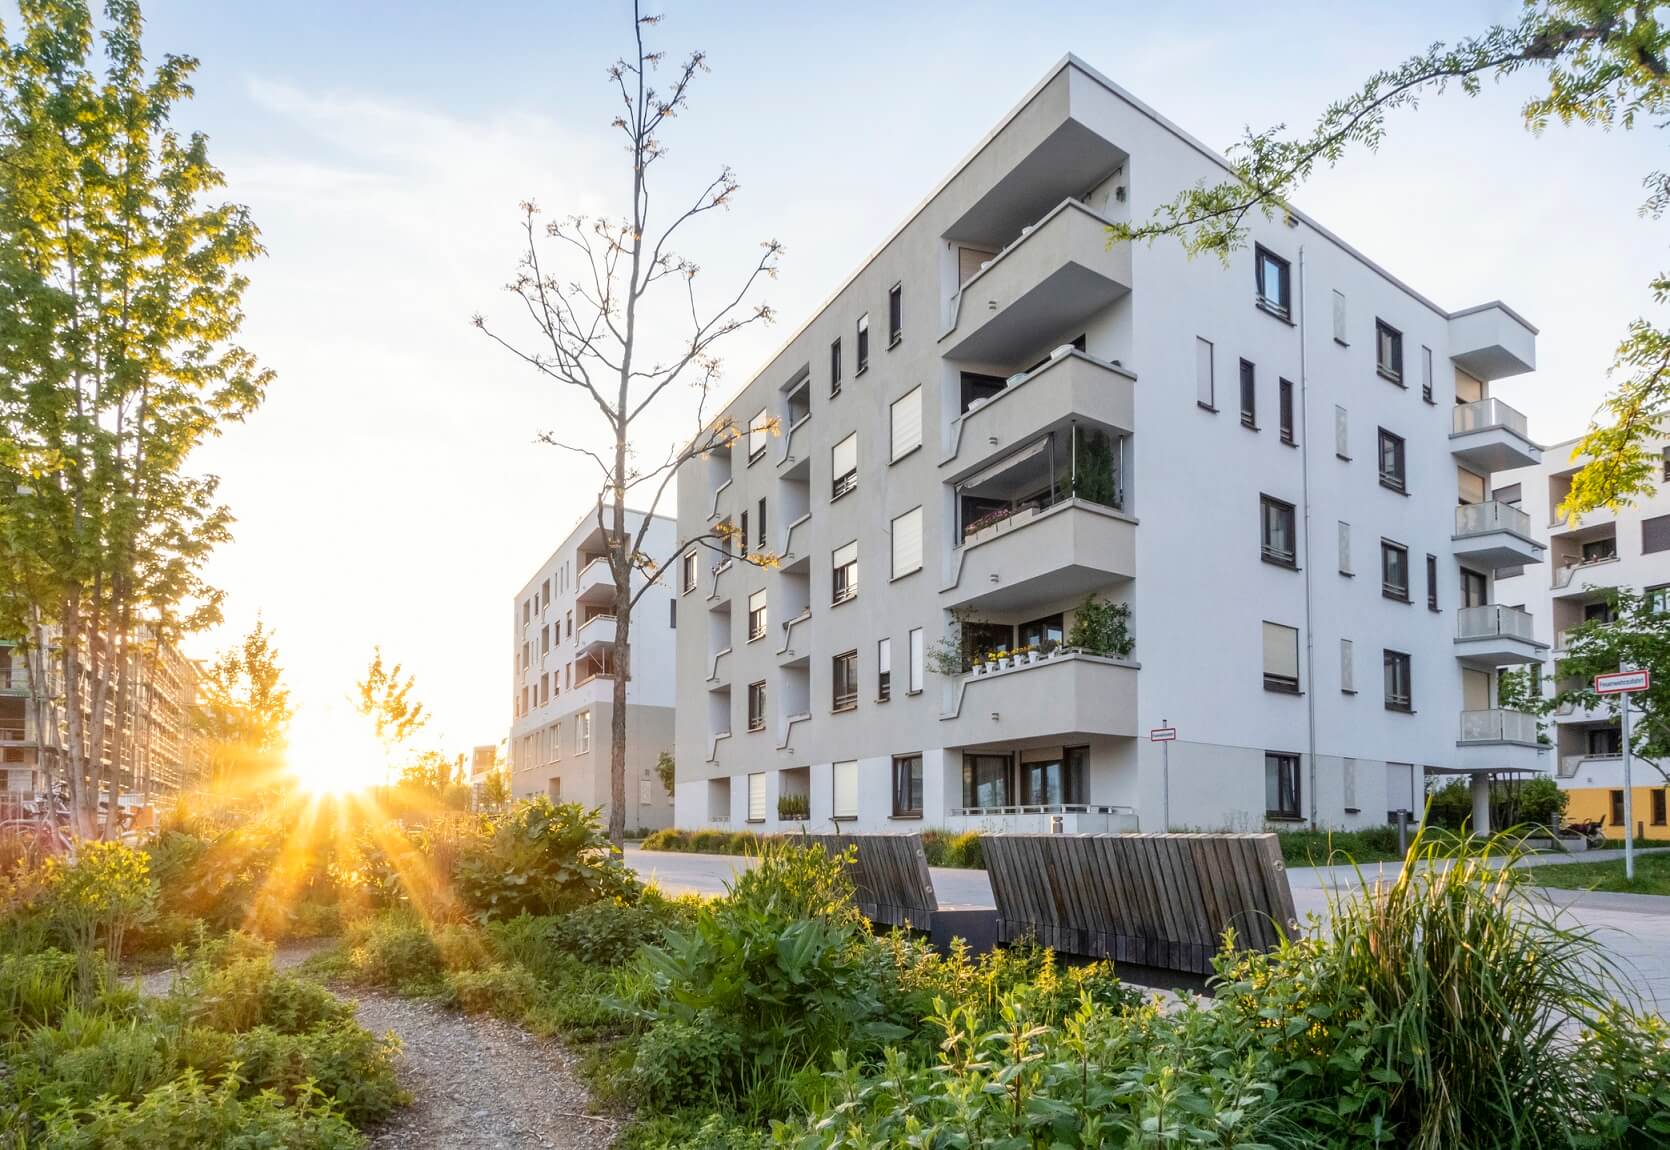 Grünanlage vor einem modernen Mehrfamilienhaus in Deutschland bei Sonnenuntergang